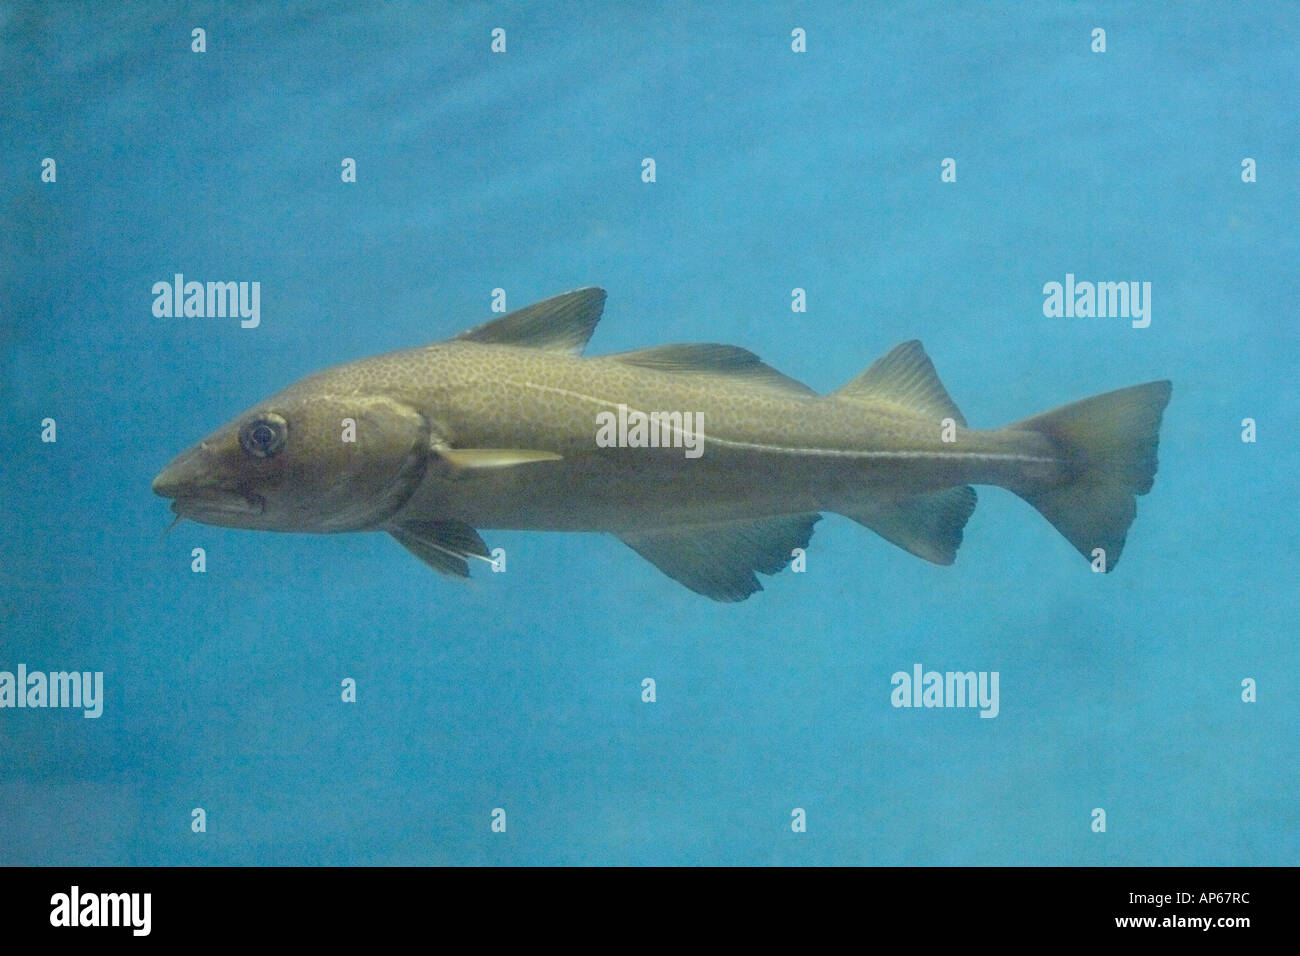 Atlantic cod Gadus morhua fish swimming Marine aquarium subject Iceland Stock Photo